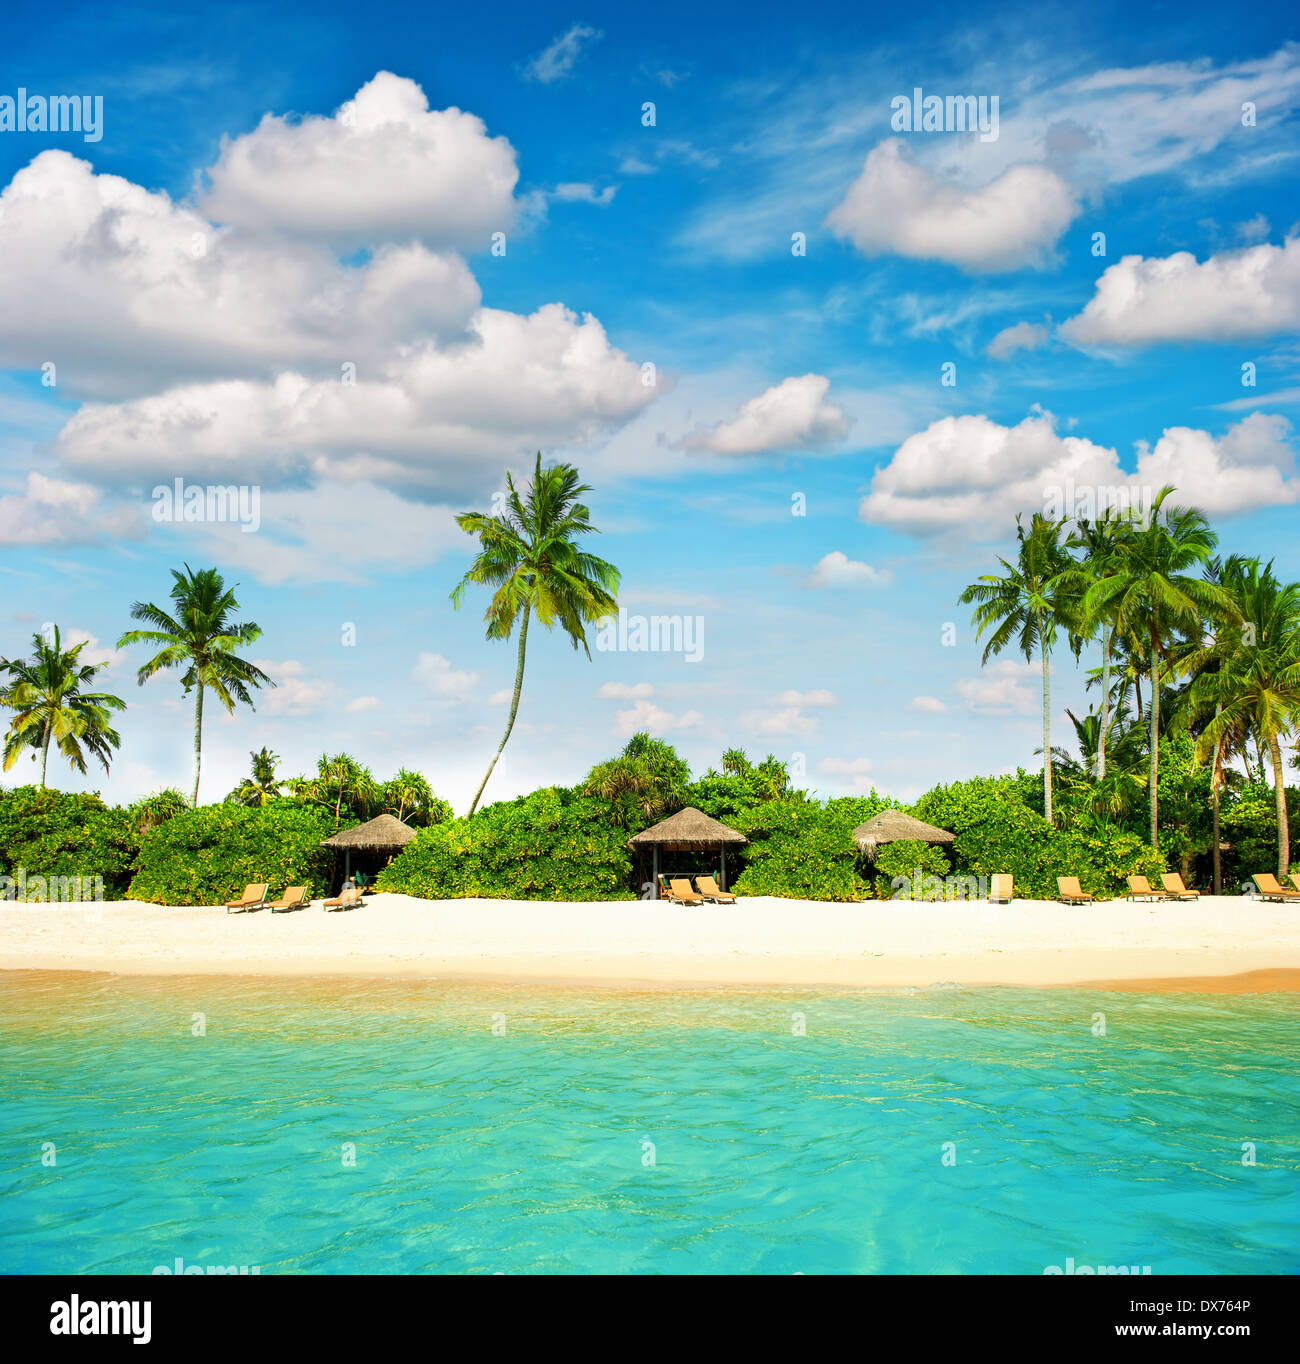 Plage de l'île tropicale avec perfect blue sky. Paradise Island avec palm treas Banque D'Images